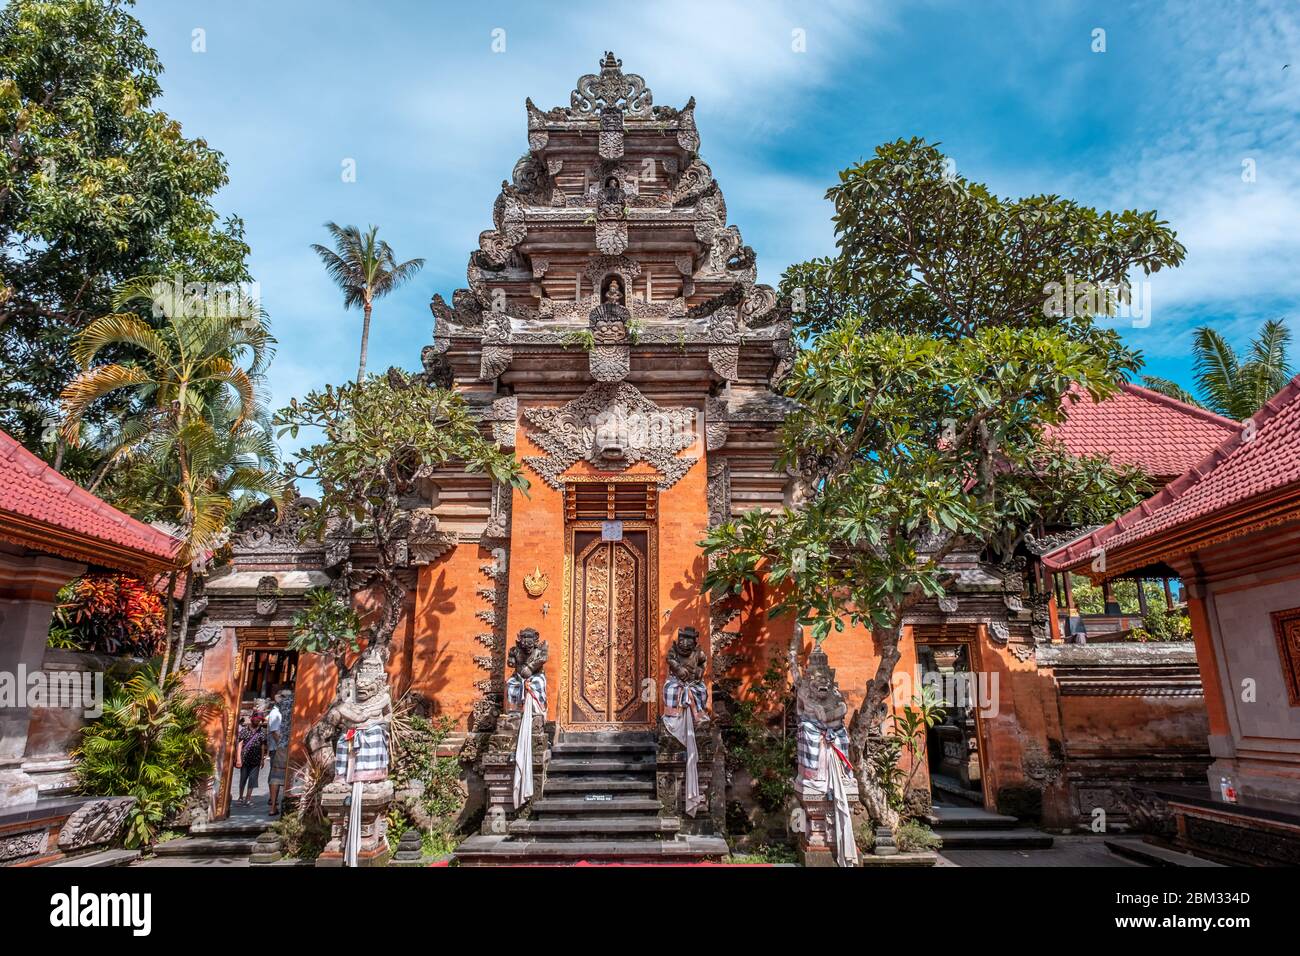 Nombre de este lugar Palacio Ubud es conocido como Palacio Real de Ubud y el nombre local es ' Puri Saren Agung ' Foto de stock